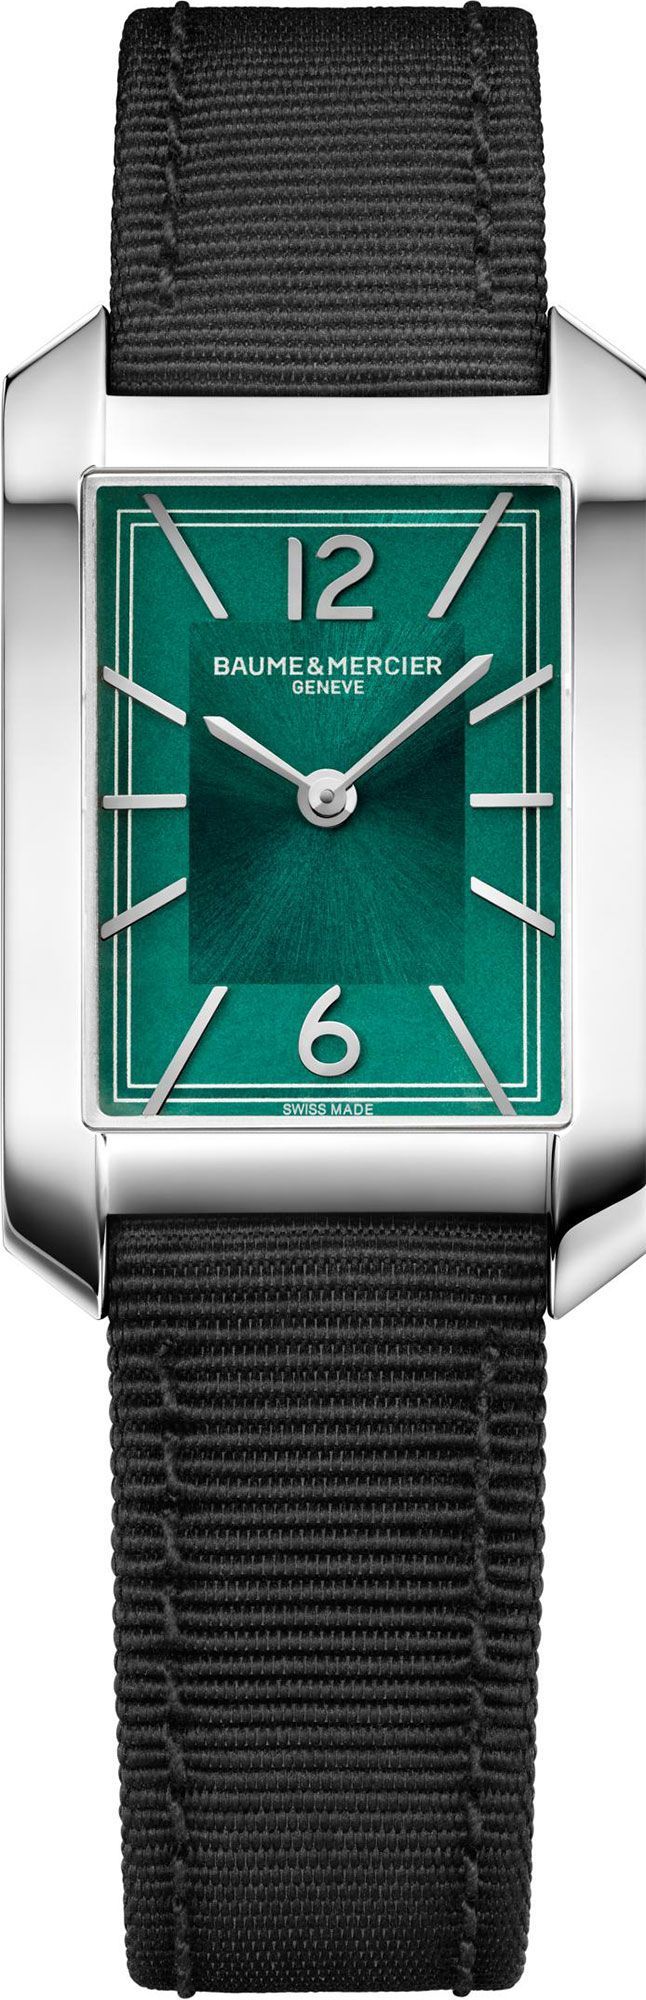 Baume & Mercier  22 mm Watch in Green Dial For Women - 1